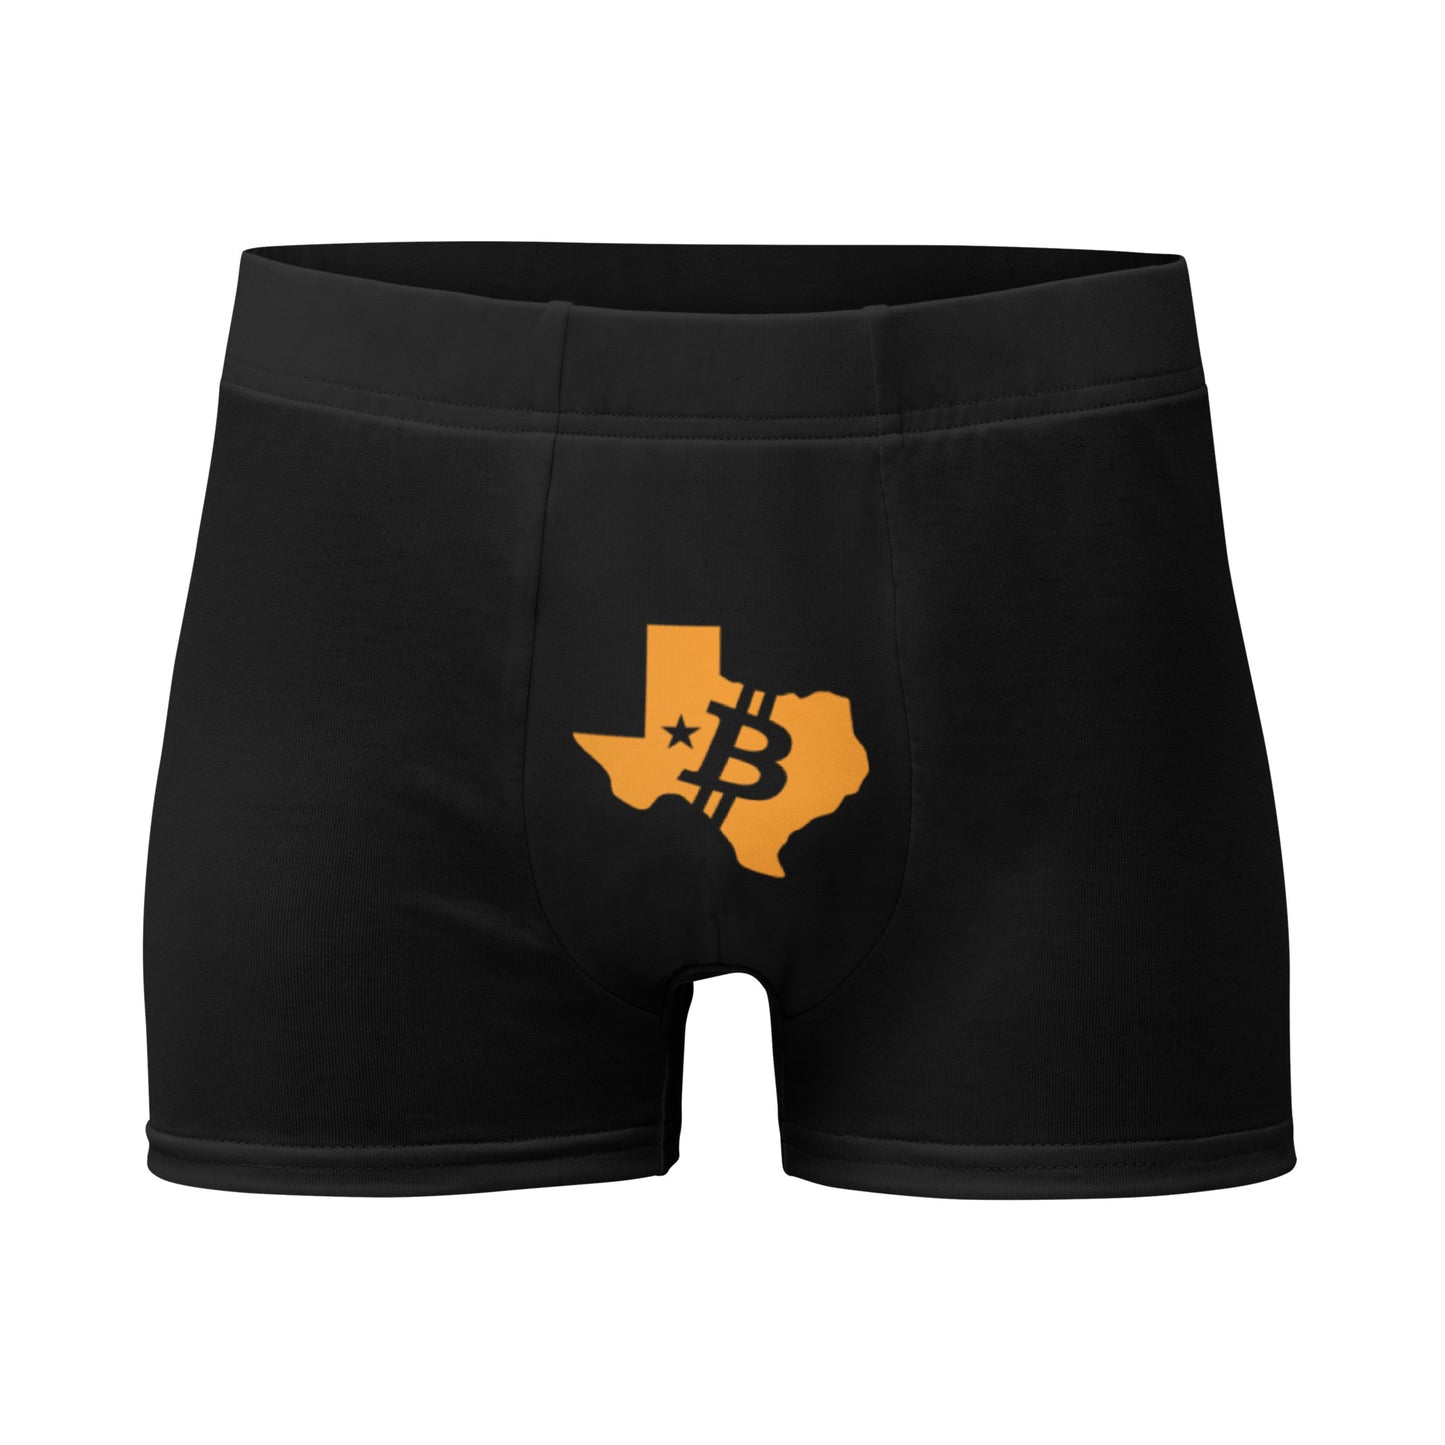 Orangepill Texas Boxer Briefs